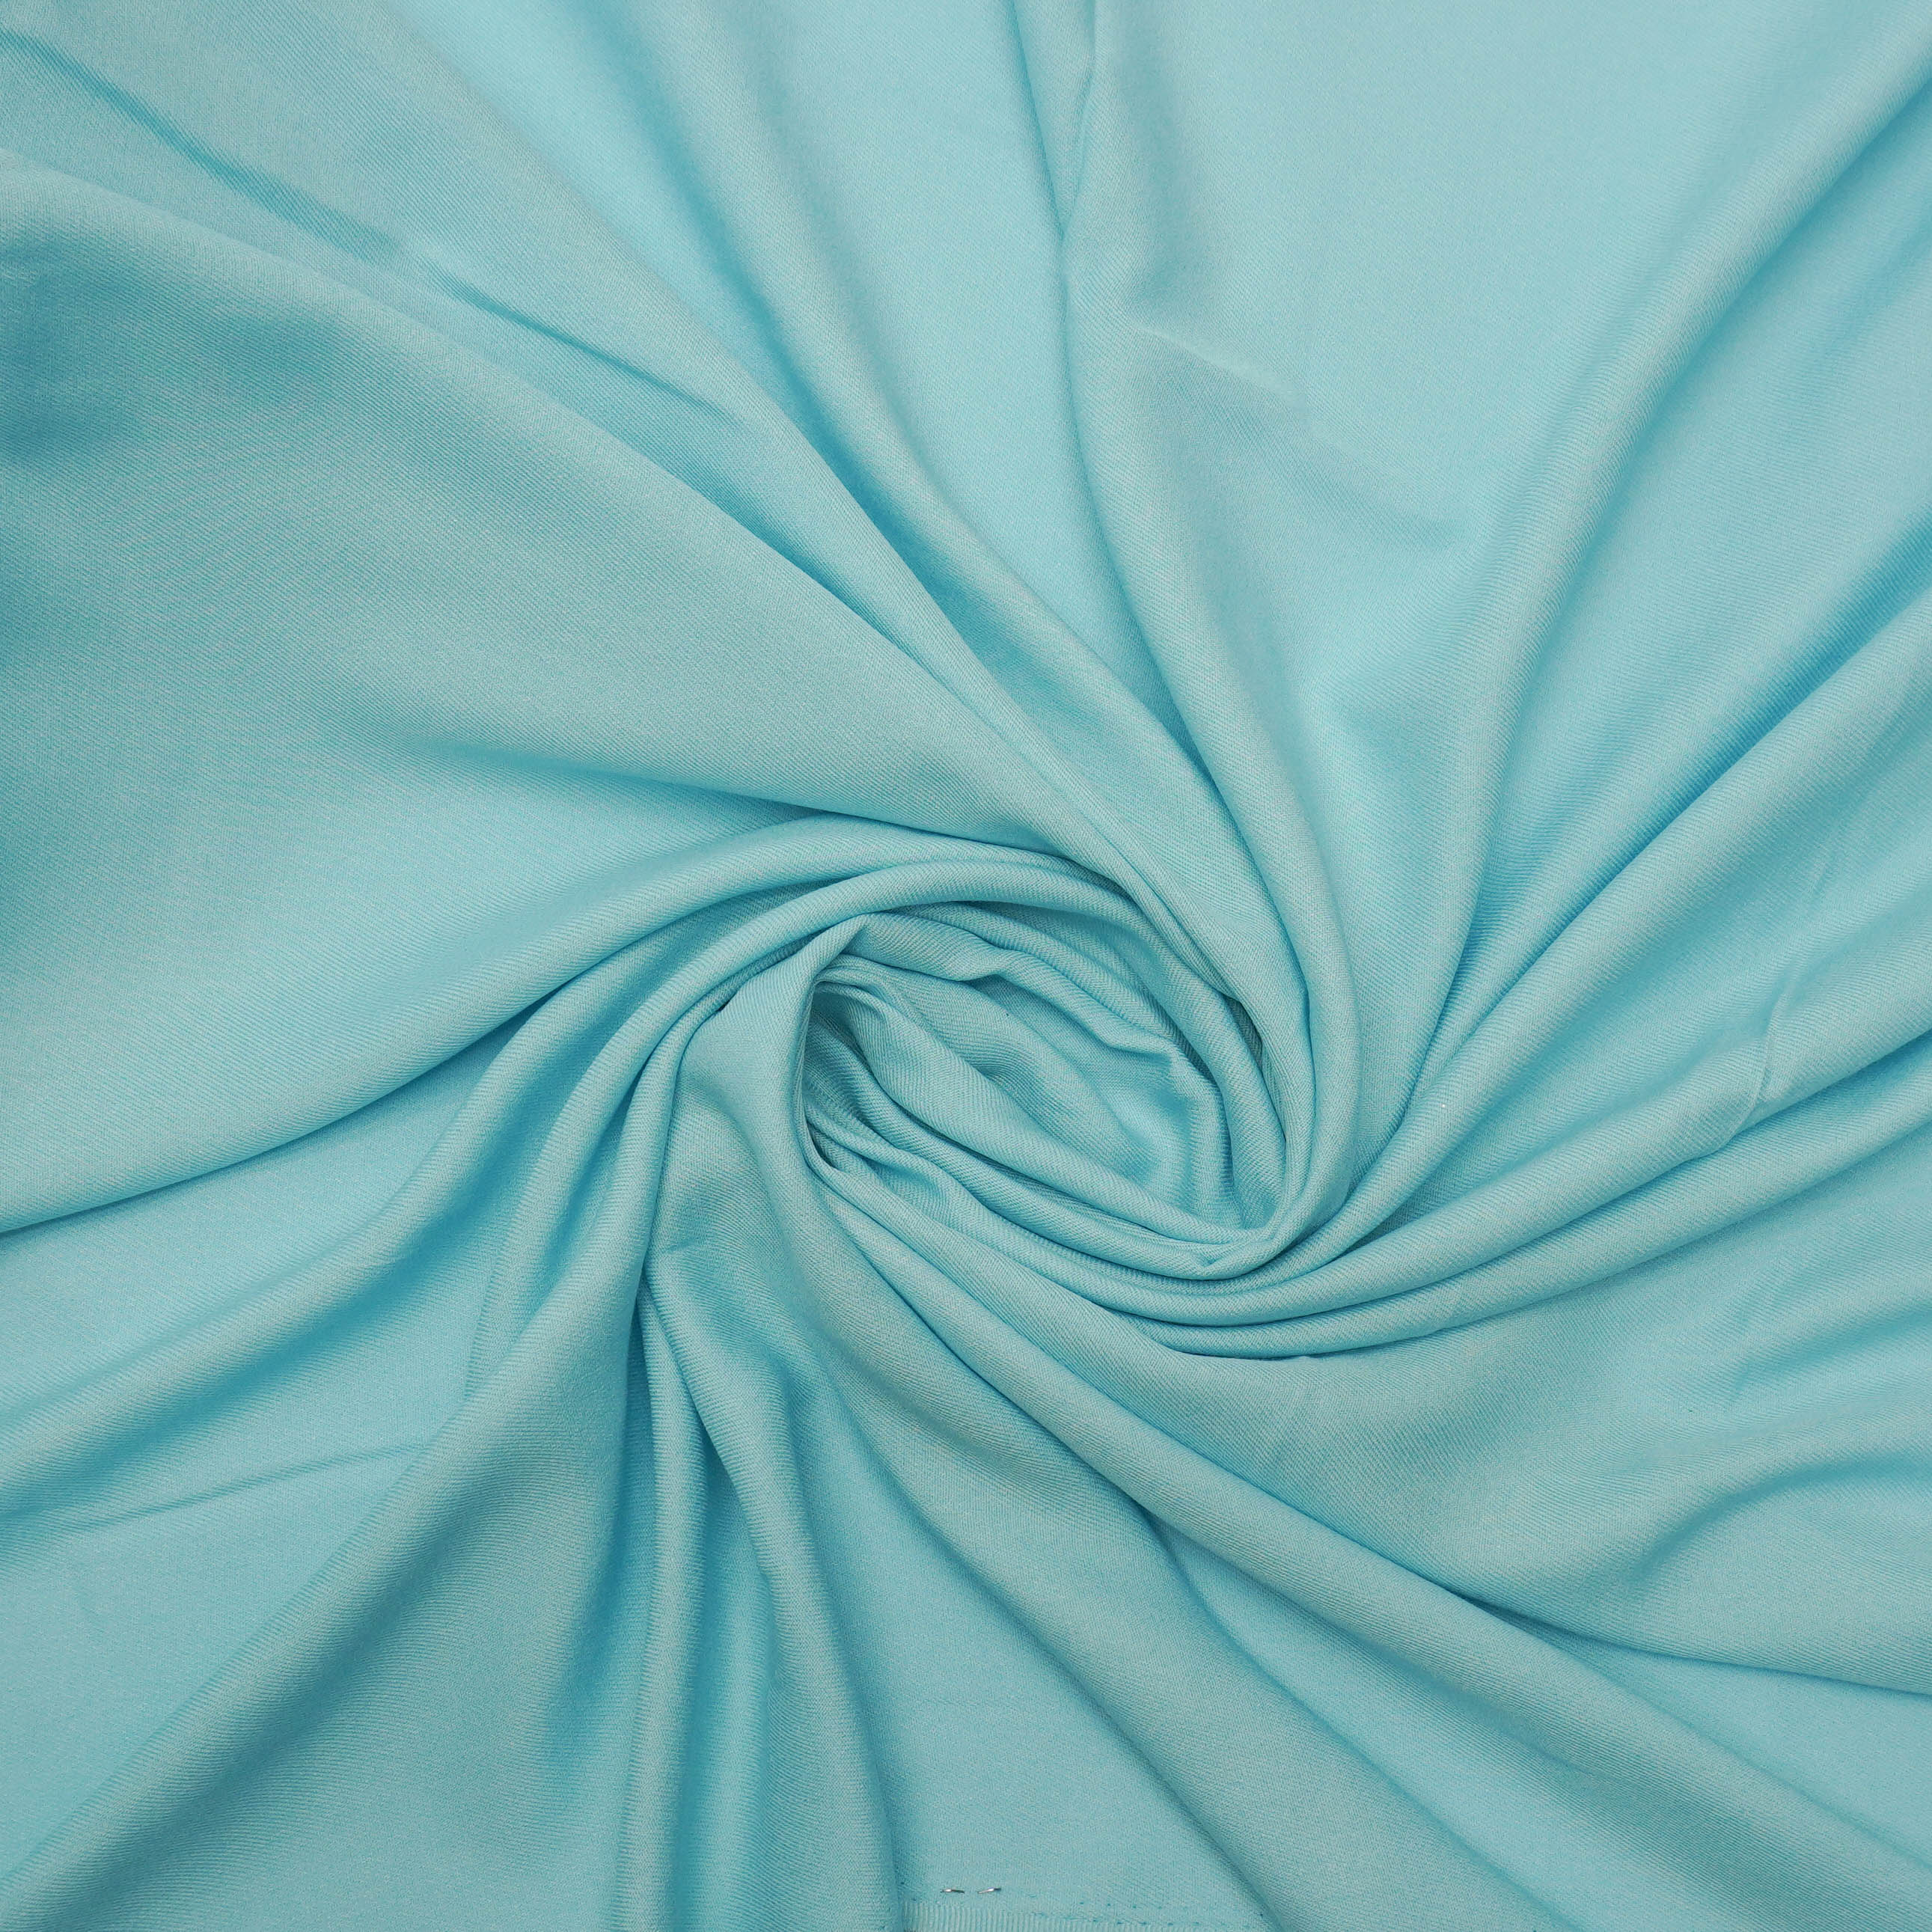 Tecido viscose rayon azul claro